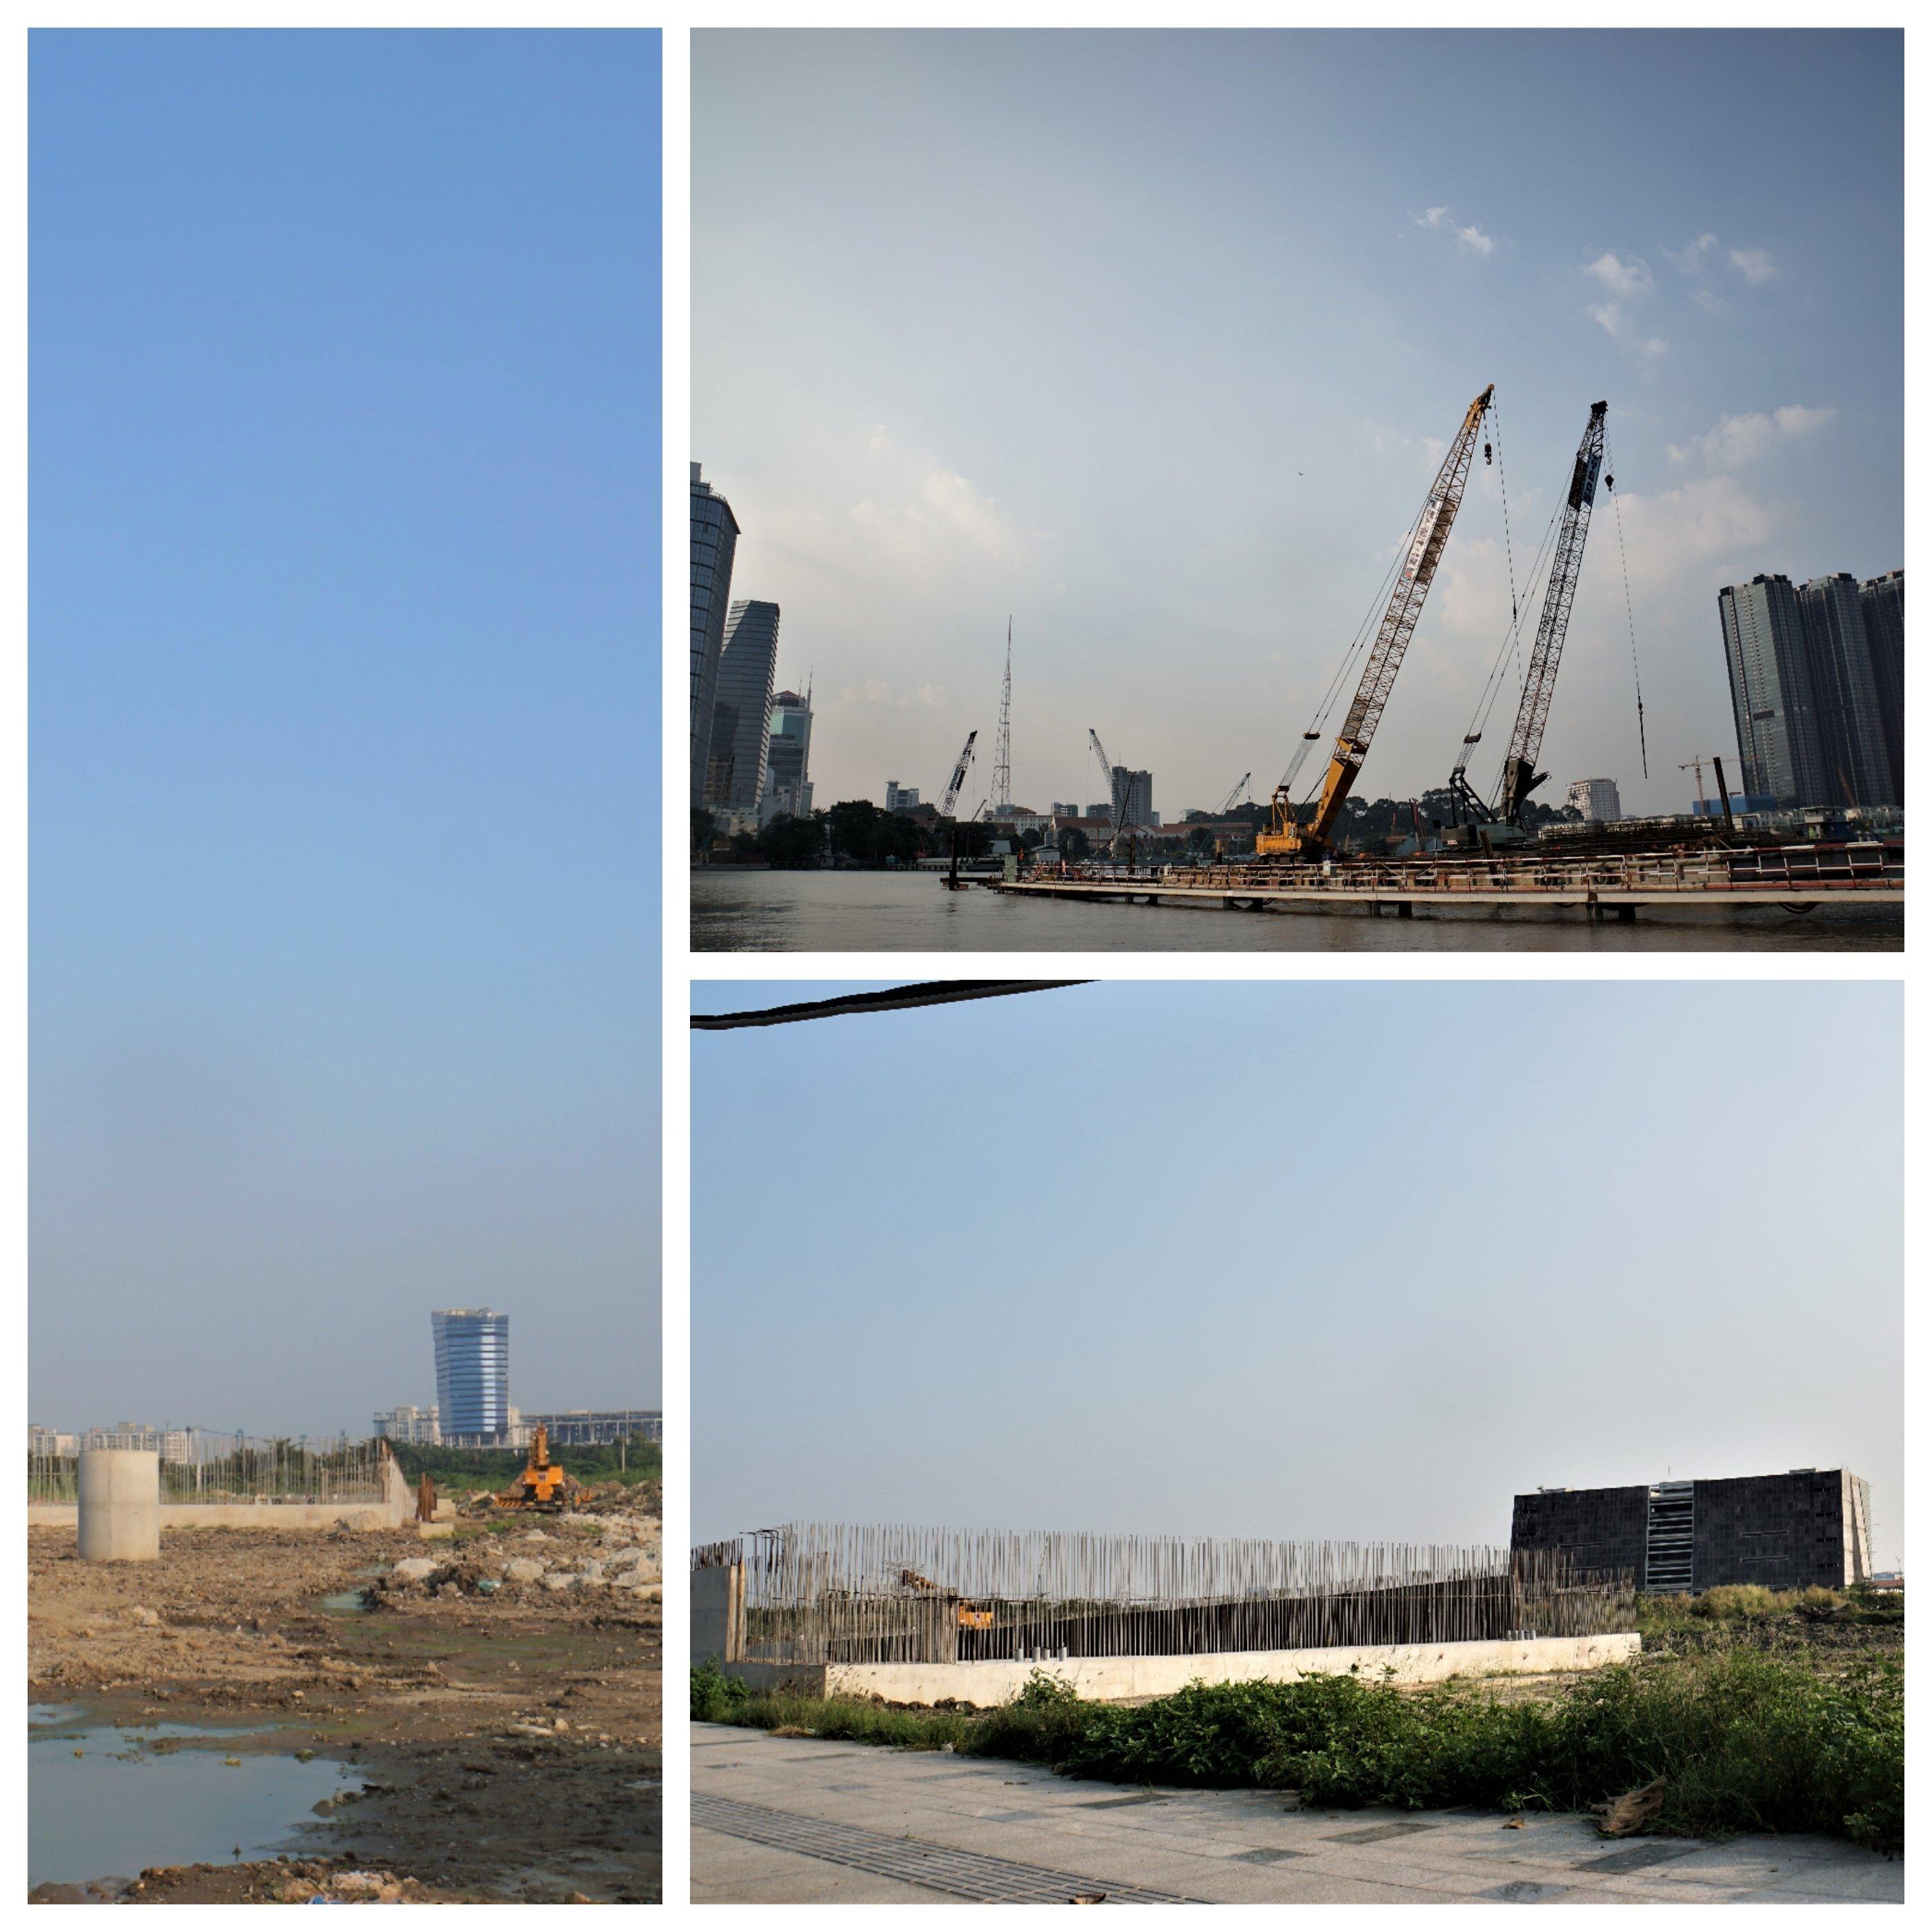 Ngoài ra, dự án còn nằm cạnh công trình thi công cầu Thủ Thiêm 2. Đây là cây cầu bắc qua sông Sài Gòn kết nối quận 2 với quận 1